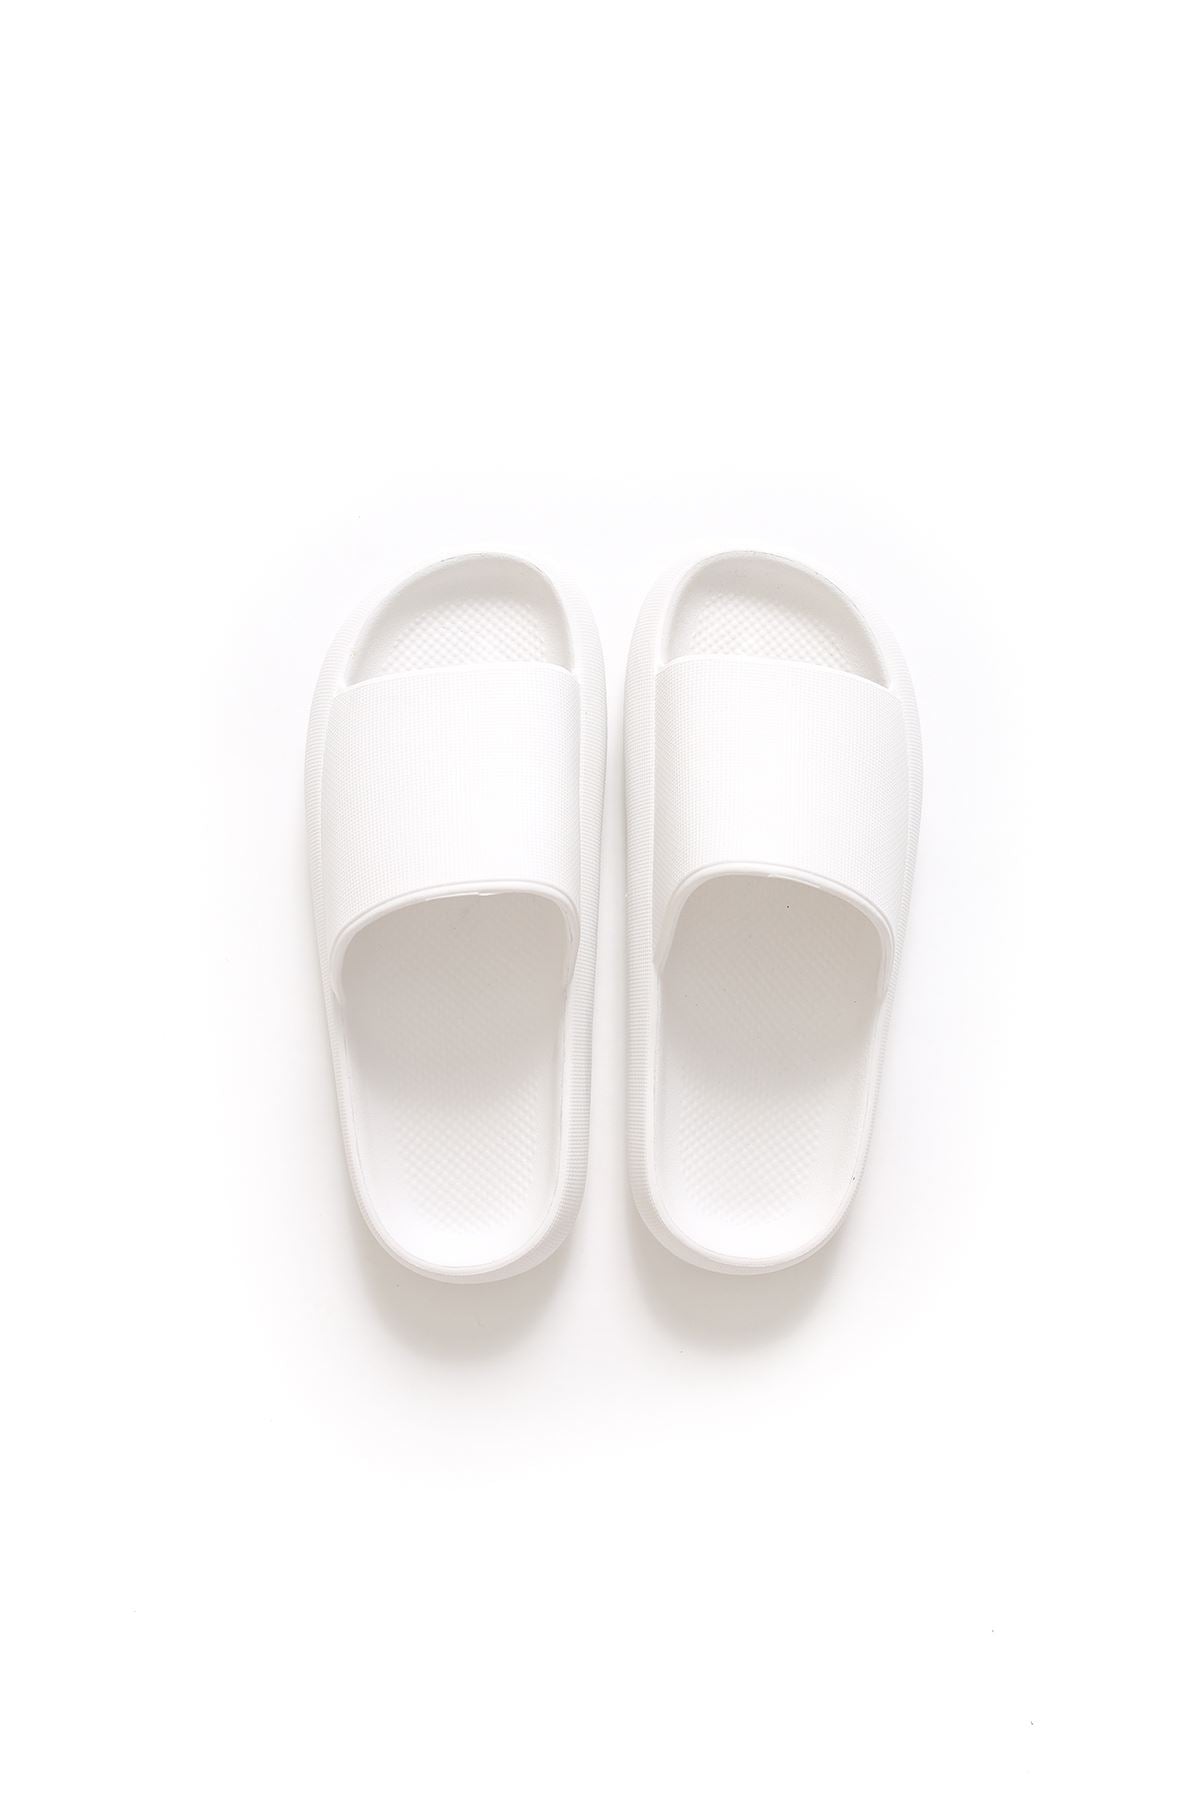 STM Design Cool Men's Slippers WHITE - STREETMODE ™